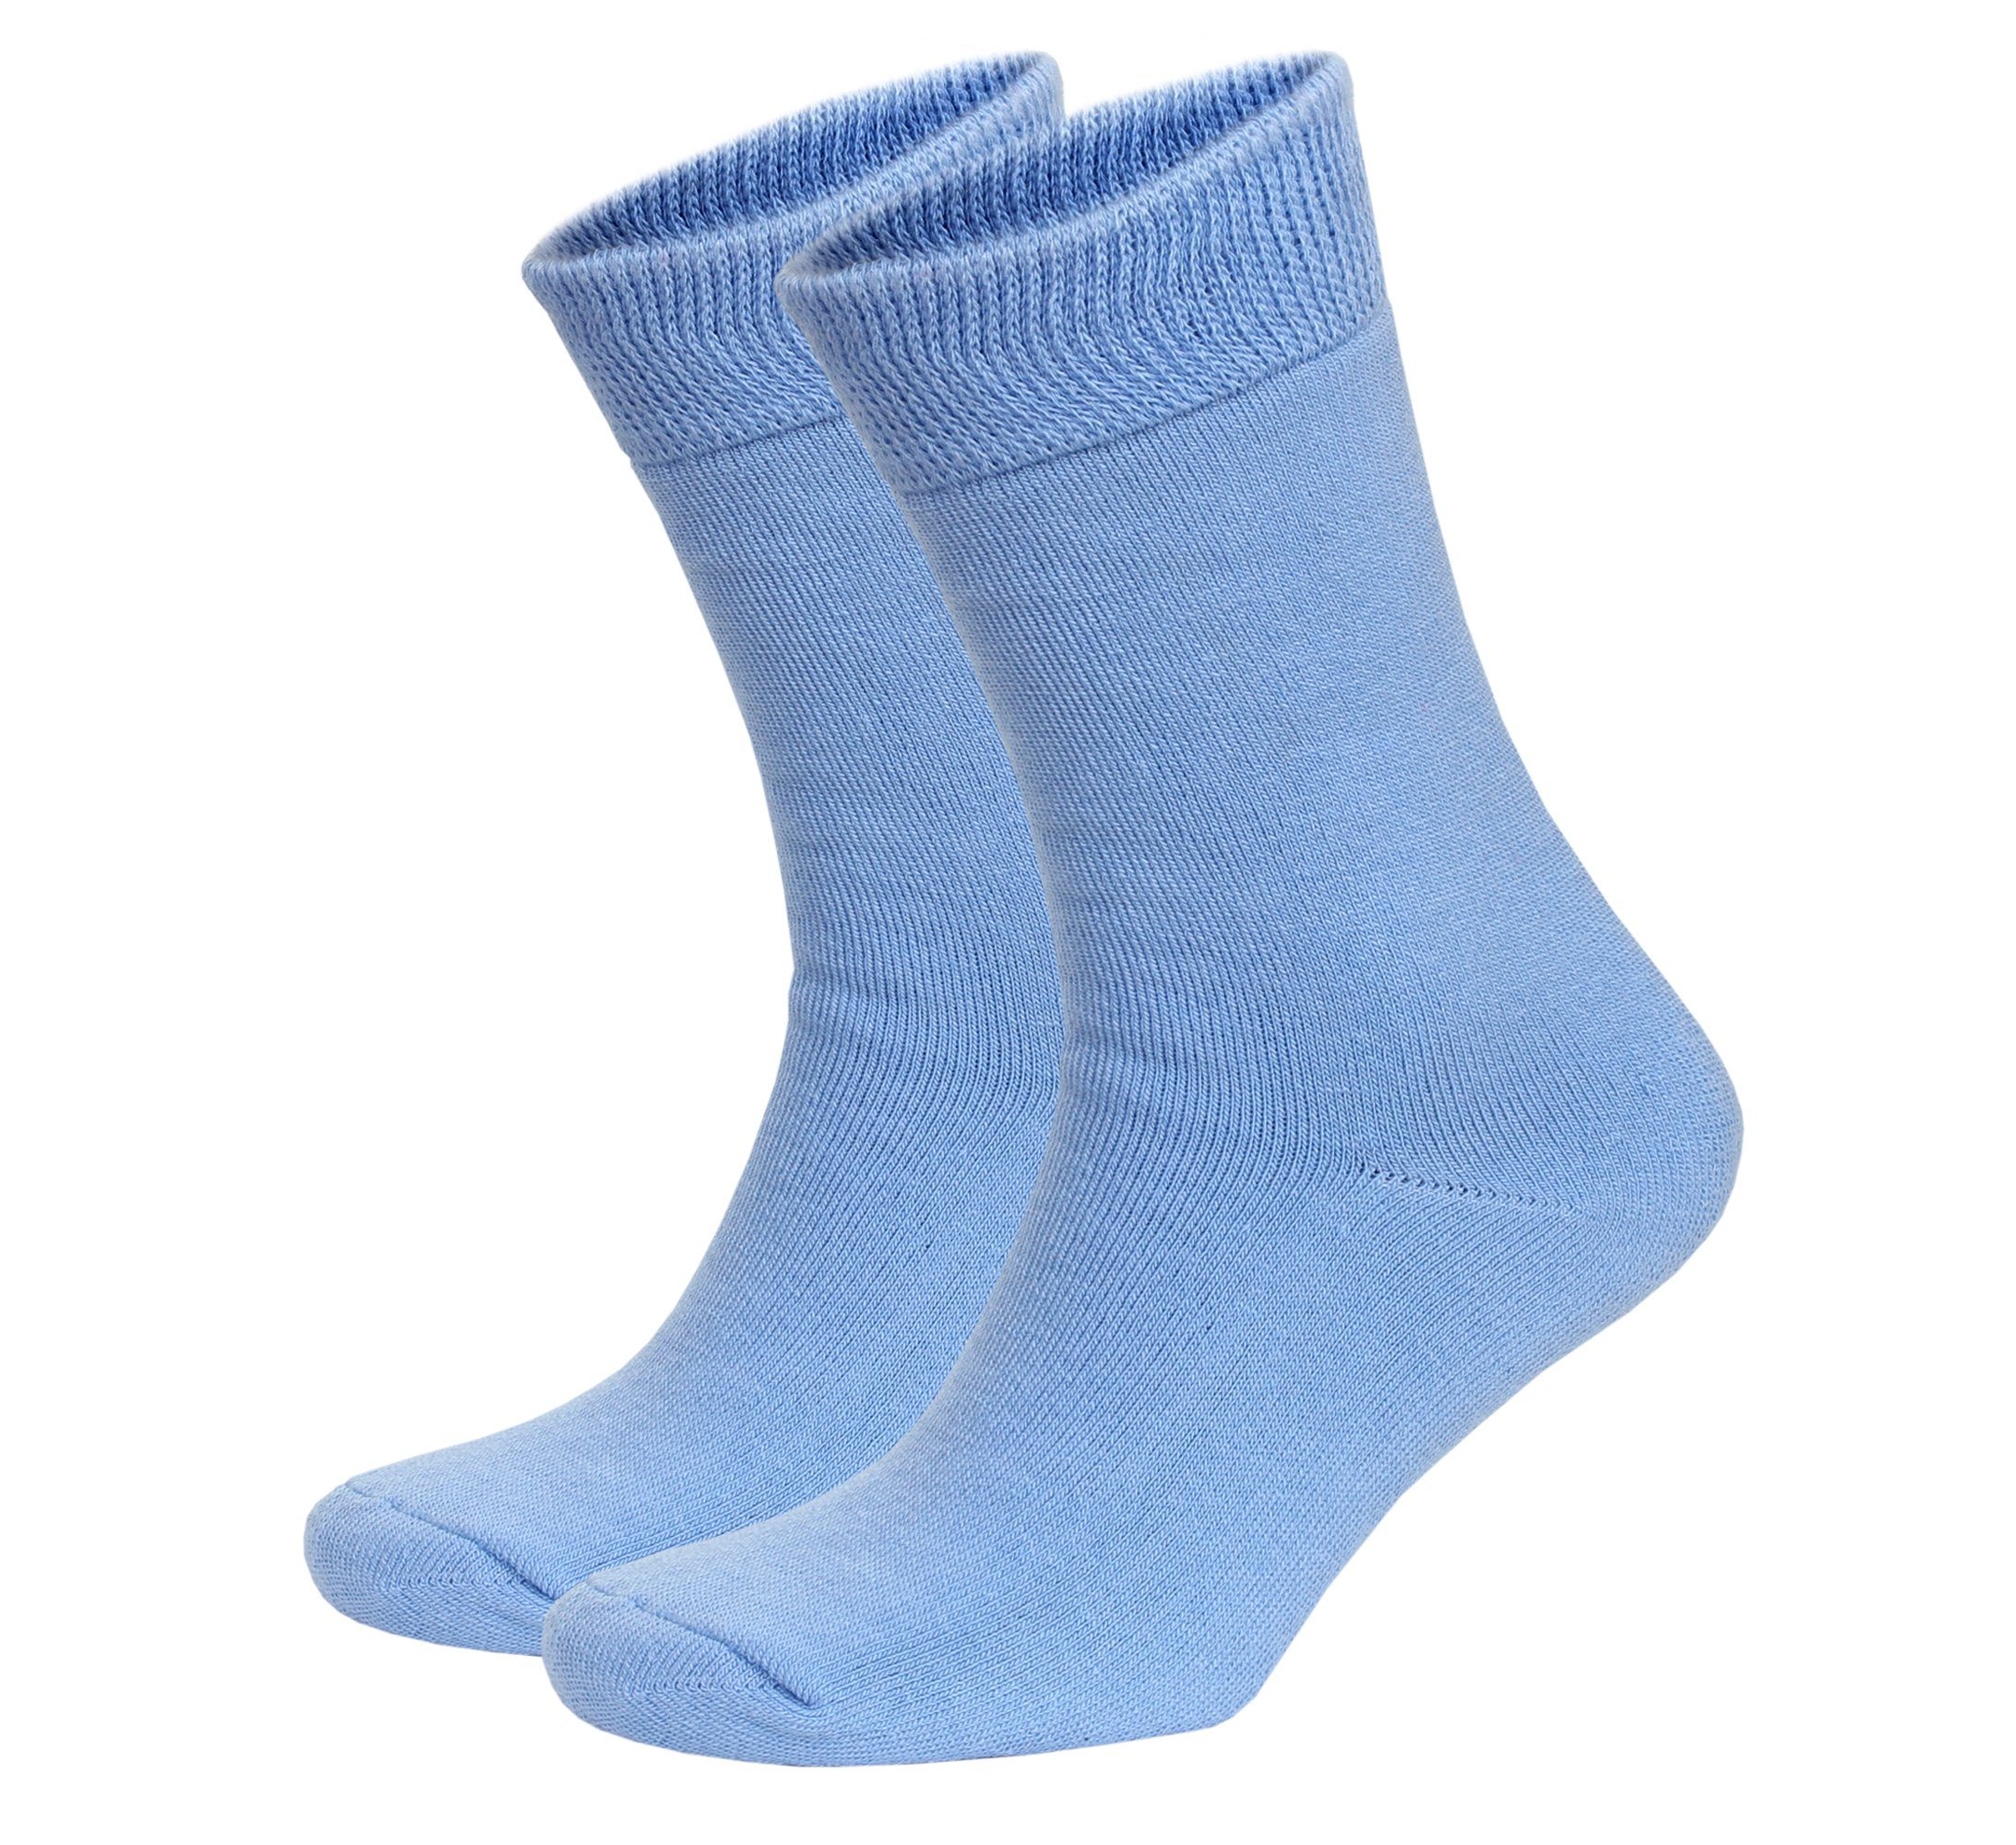 NoblesBox Thermosocken Damen Wintersocken (Beutel, 2-Paar, 37-40 EU Größe) Damen Warme Socken, Damen Arbeitssocken Blau